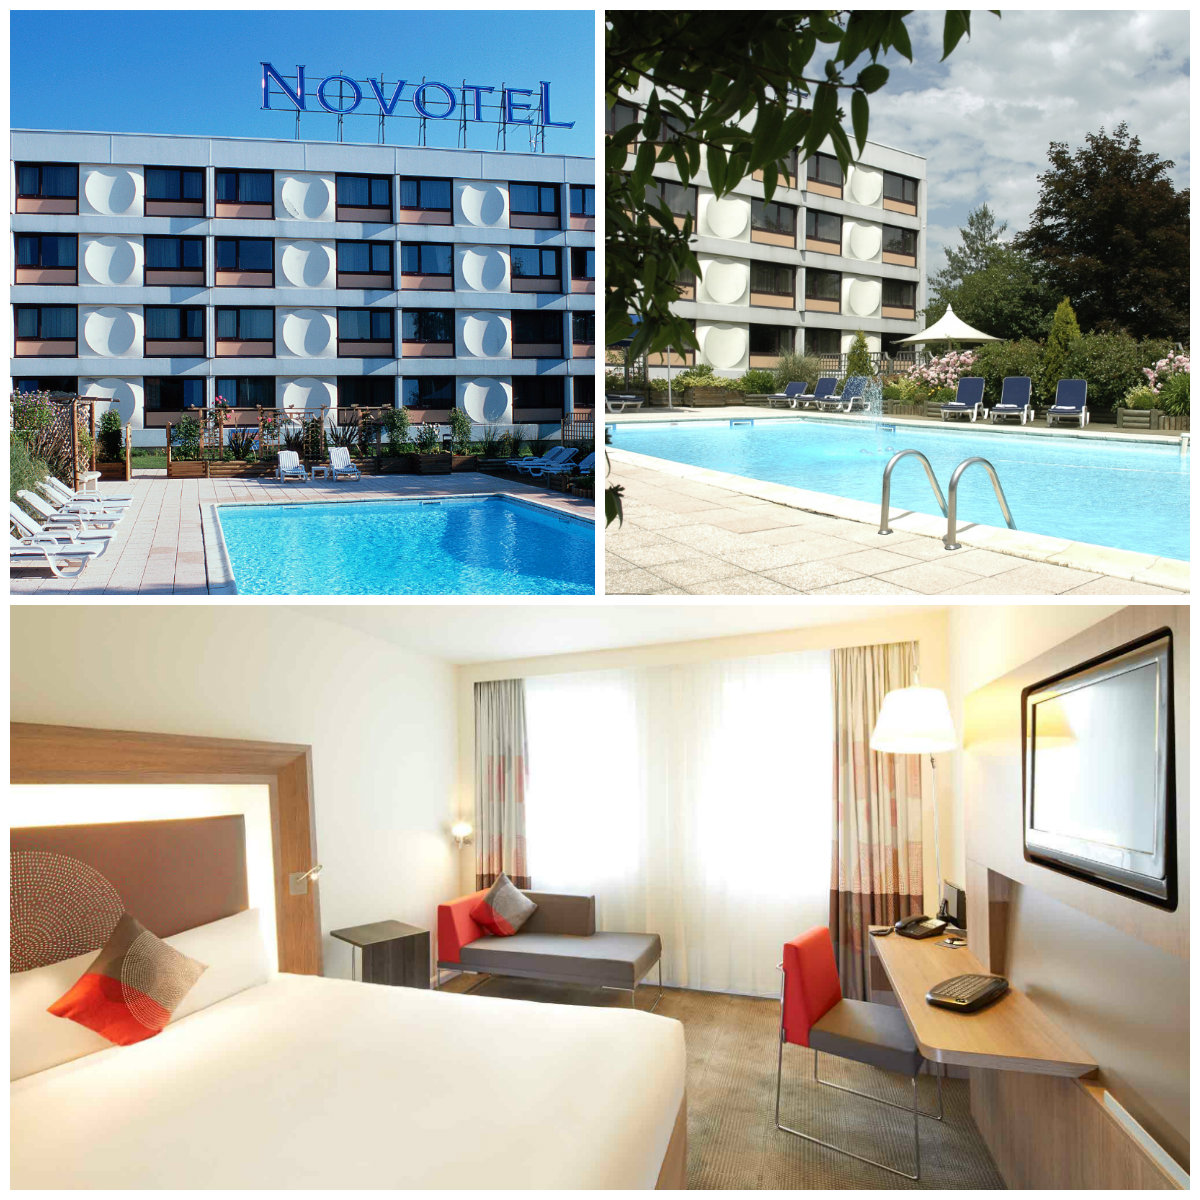 Hotel Novotel Nancy Ouest